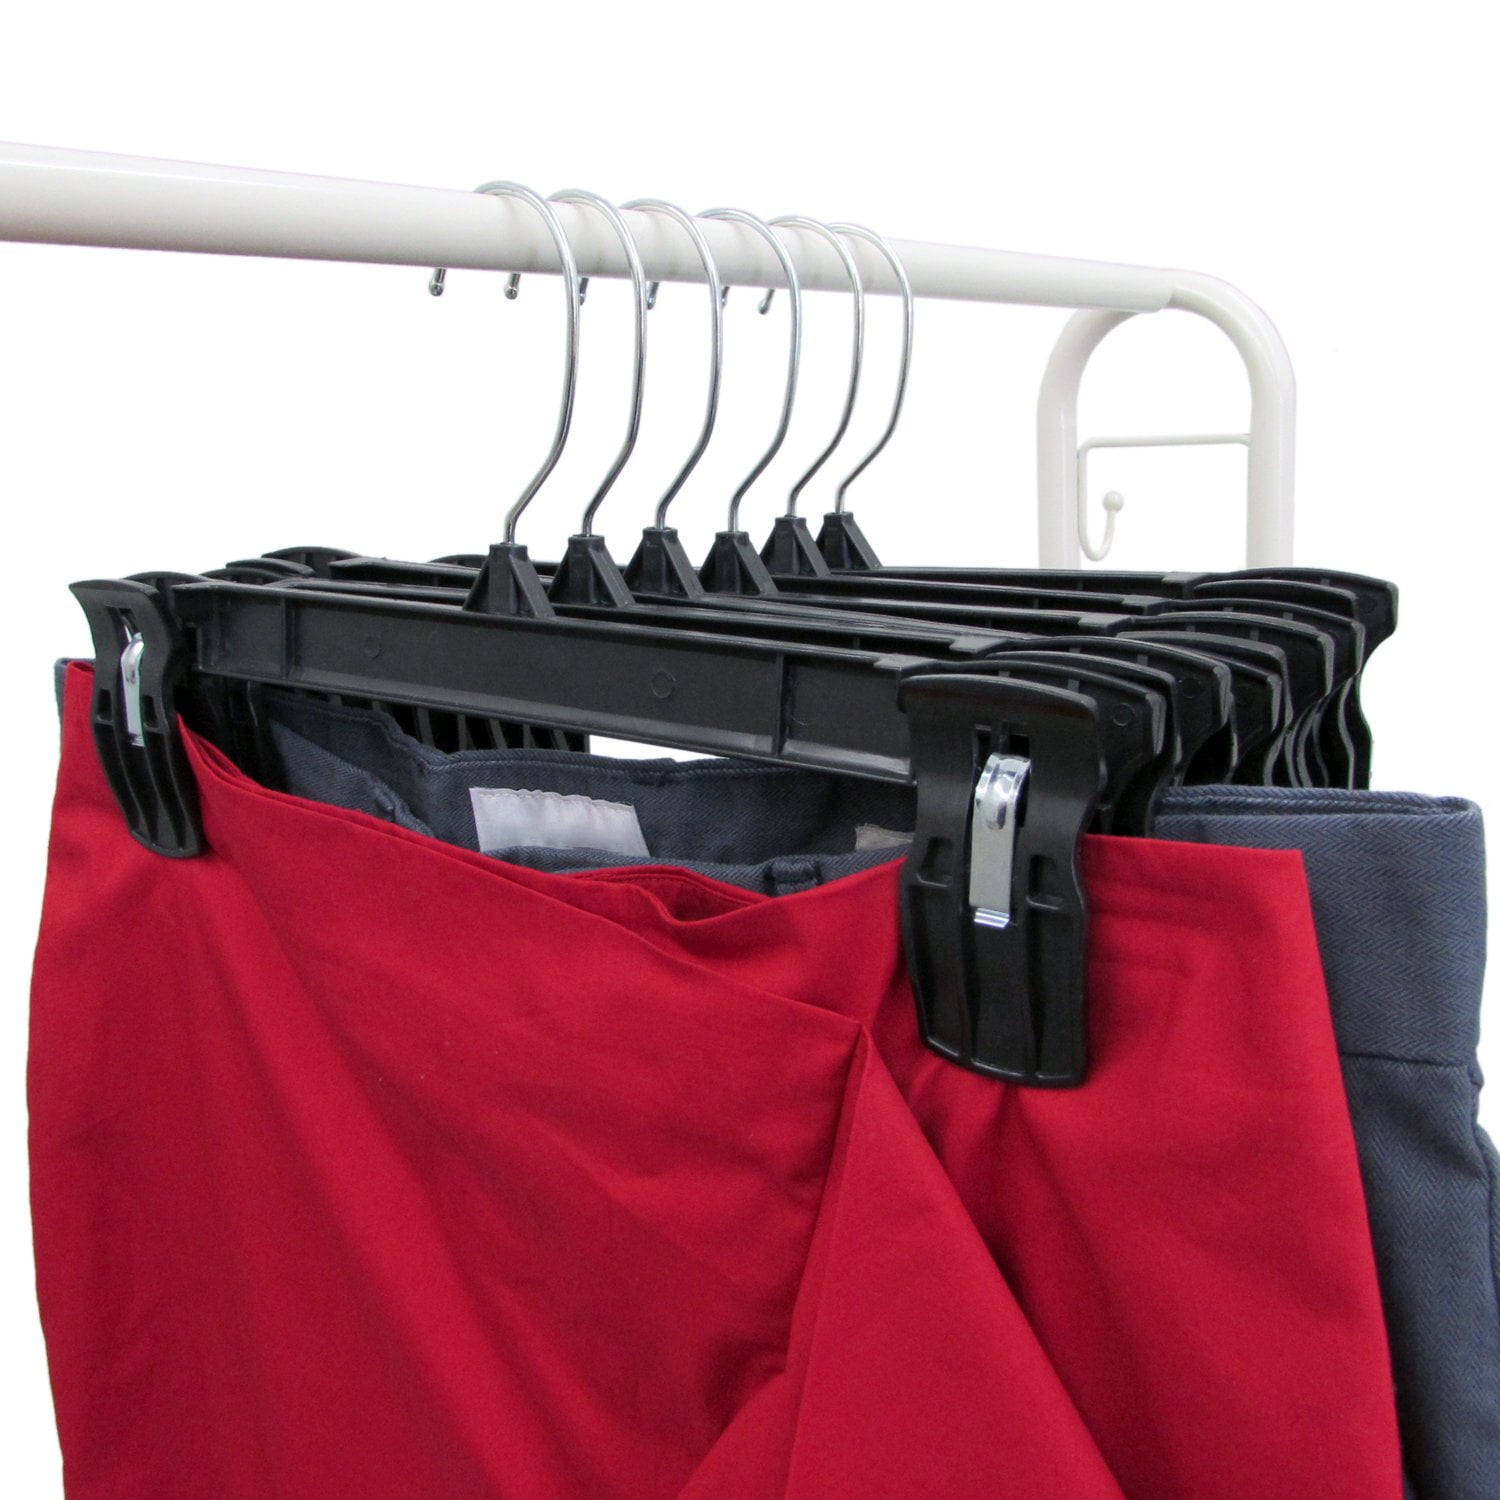 Plastic Skirt/Pant Hanger - Super Heavy Weight - 12